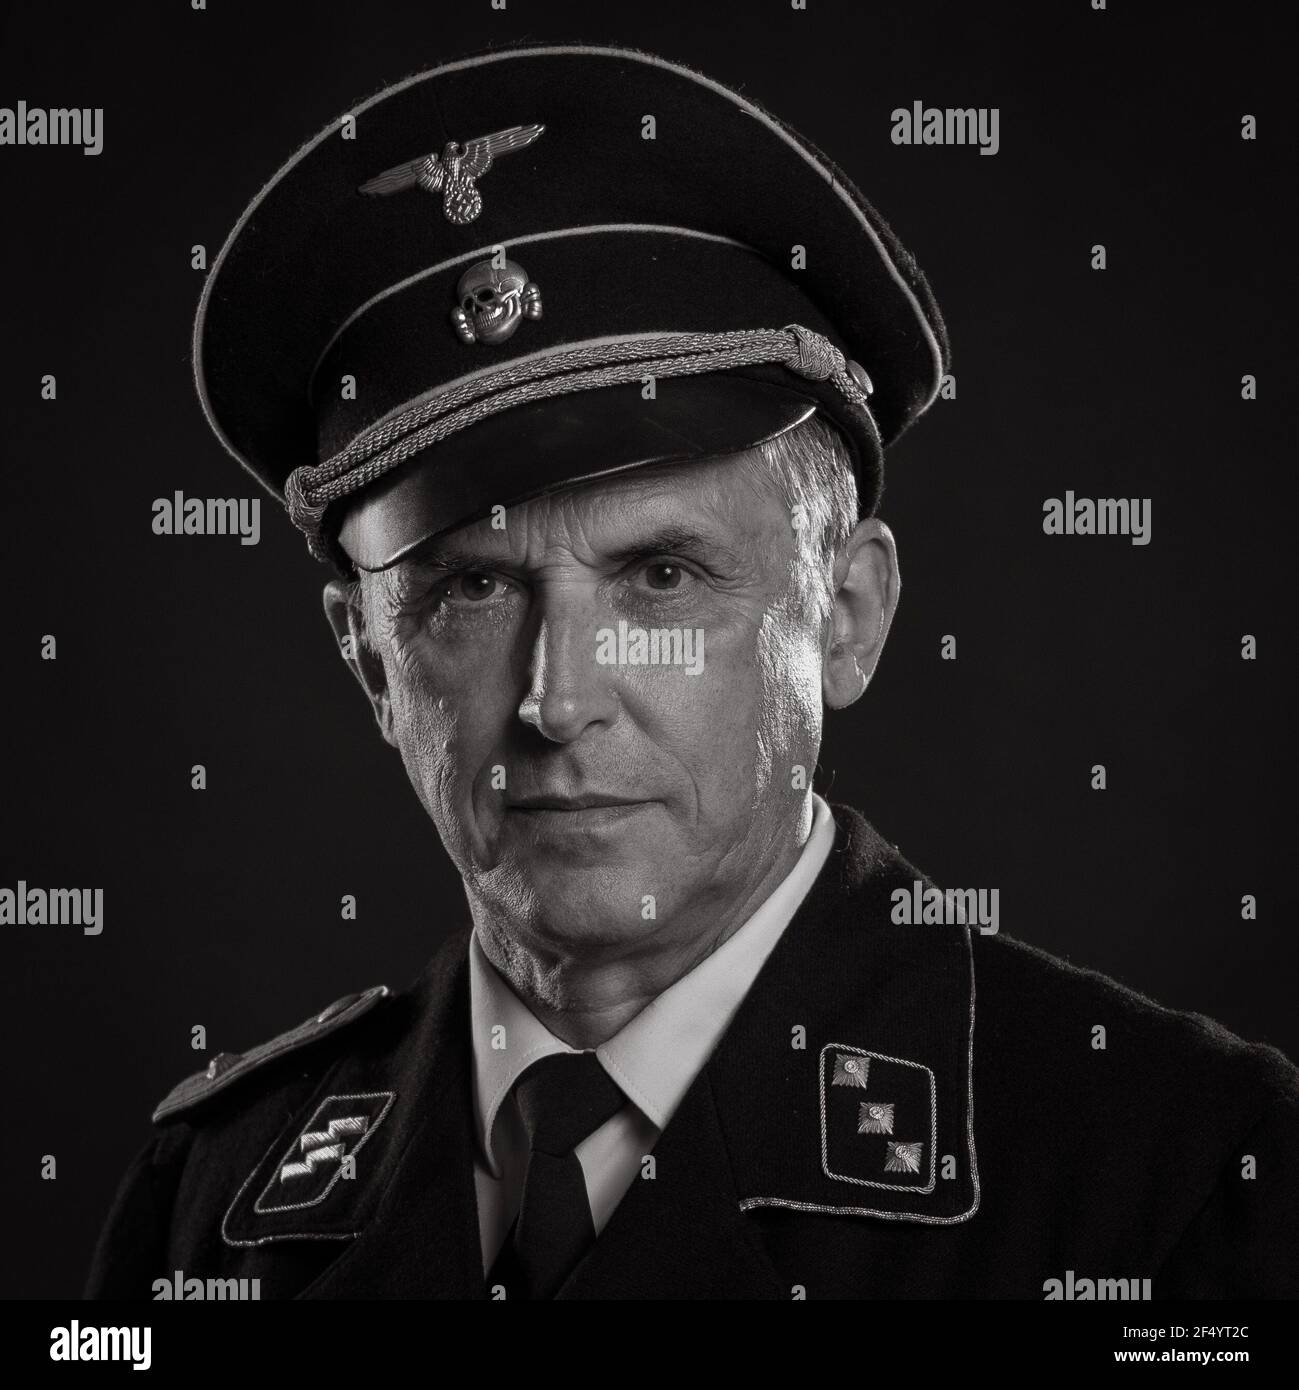 Mann Schauspieler in historischer Militäruniform als Offizier der deutschen Armee während des Zweiten Weltkriegs, posiert auf einem schwarzen Hintergrund in einem blauen szenischen Licht Stockfoto